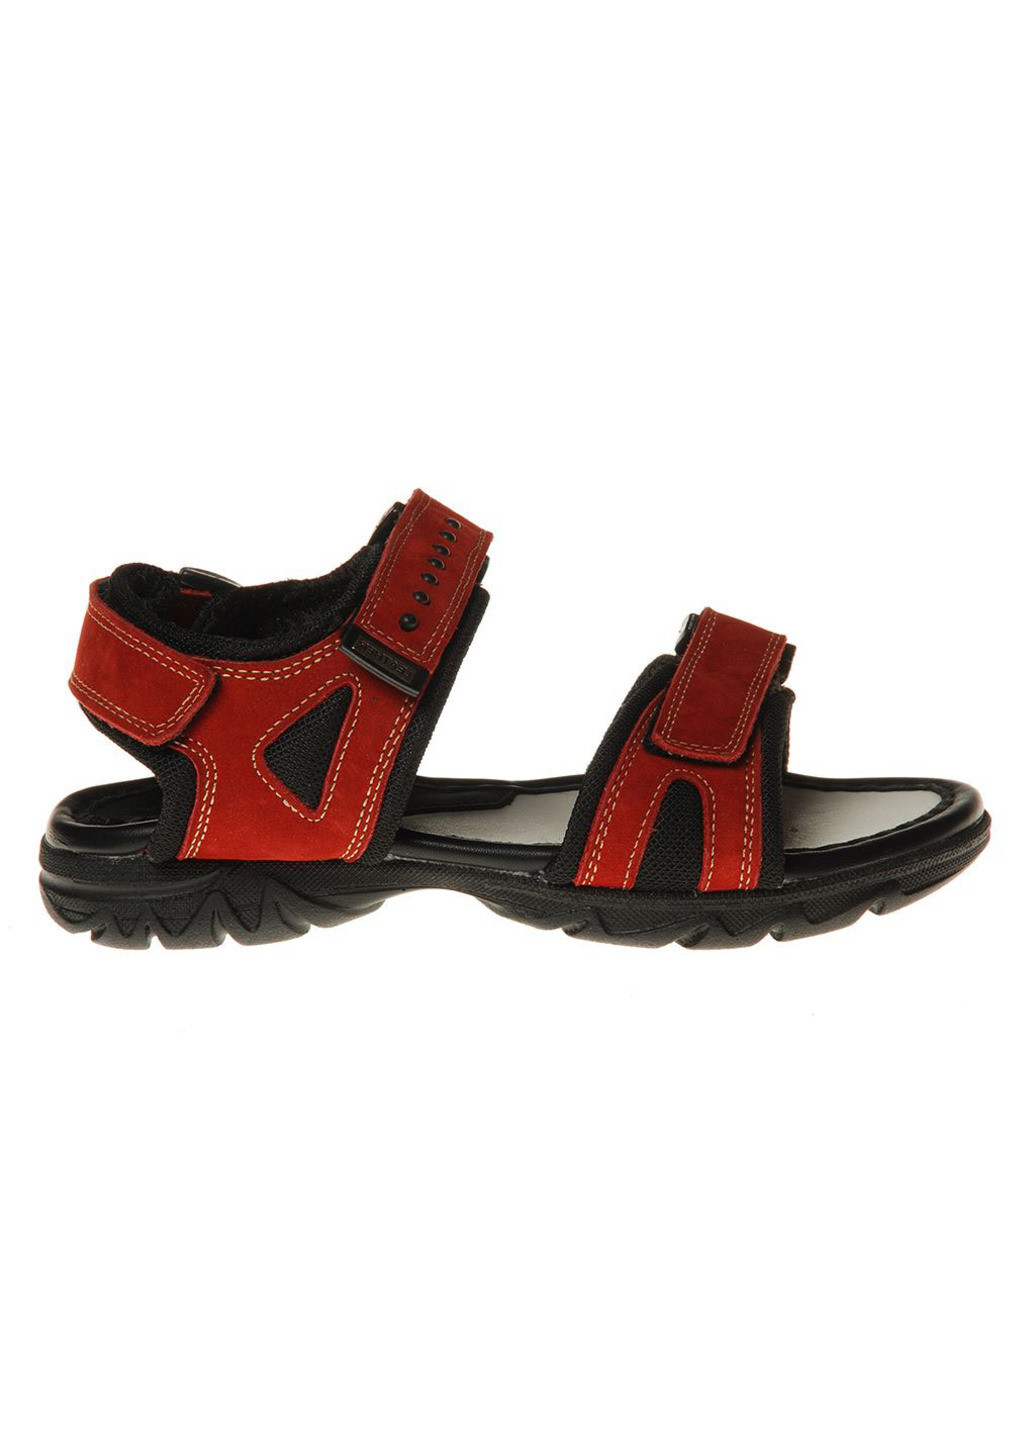 Красные повседневные сандалии подростковые для мальчиков бренда 7300043_(65) Mida на липучке